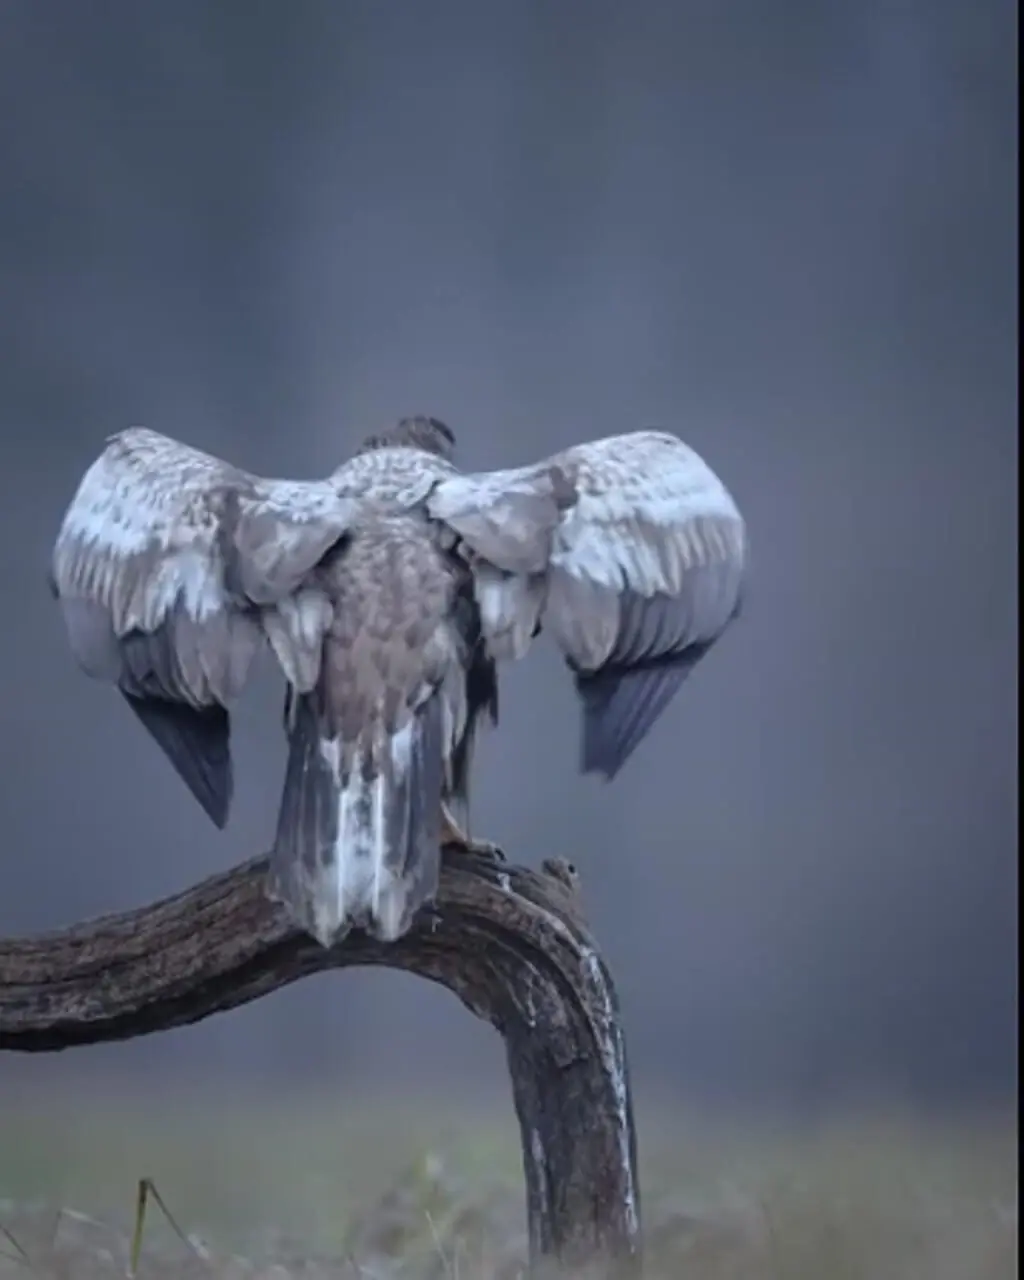 ابهت عقاب دم سفید که یکی از چهار نماینده بزرگ پرندگان شکاری است